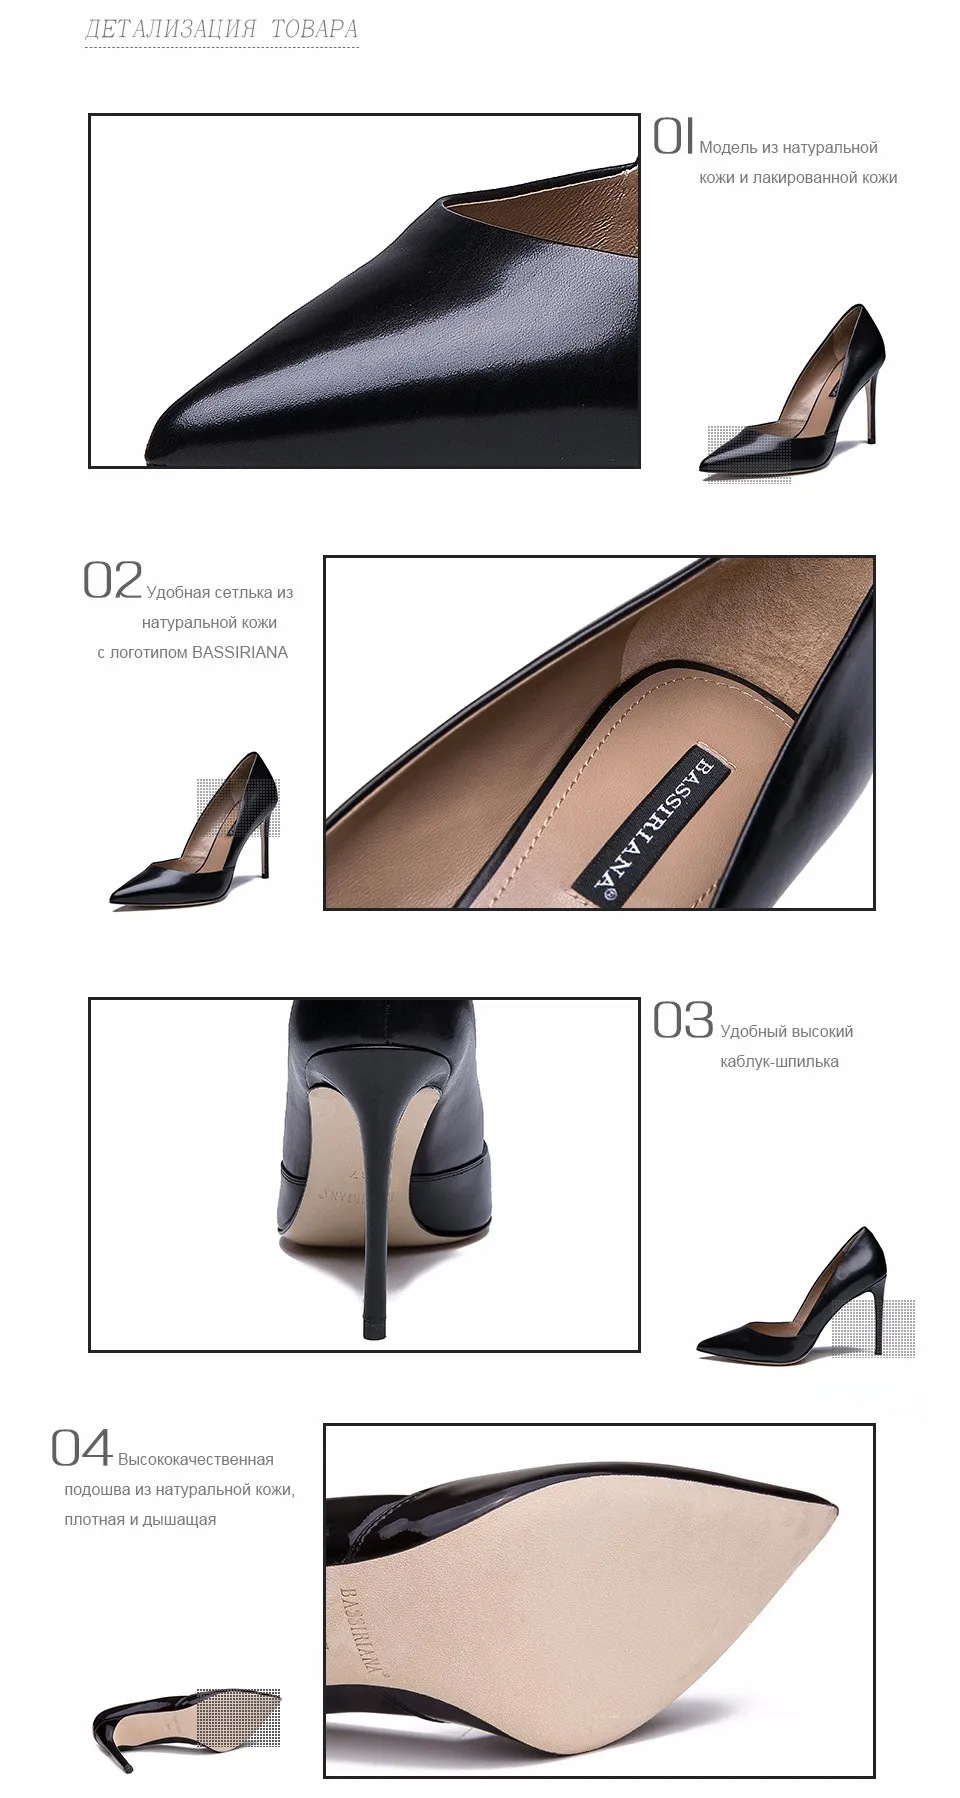 Bassiriana высококачественный Натуральная кожа и лакированная кожа женская обувь пикантные офисные туфли на тонком высоком каблуке для жинщин кожаная дышащая подошва обуви черные бежевые размер 35-40